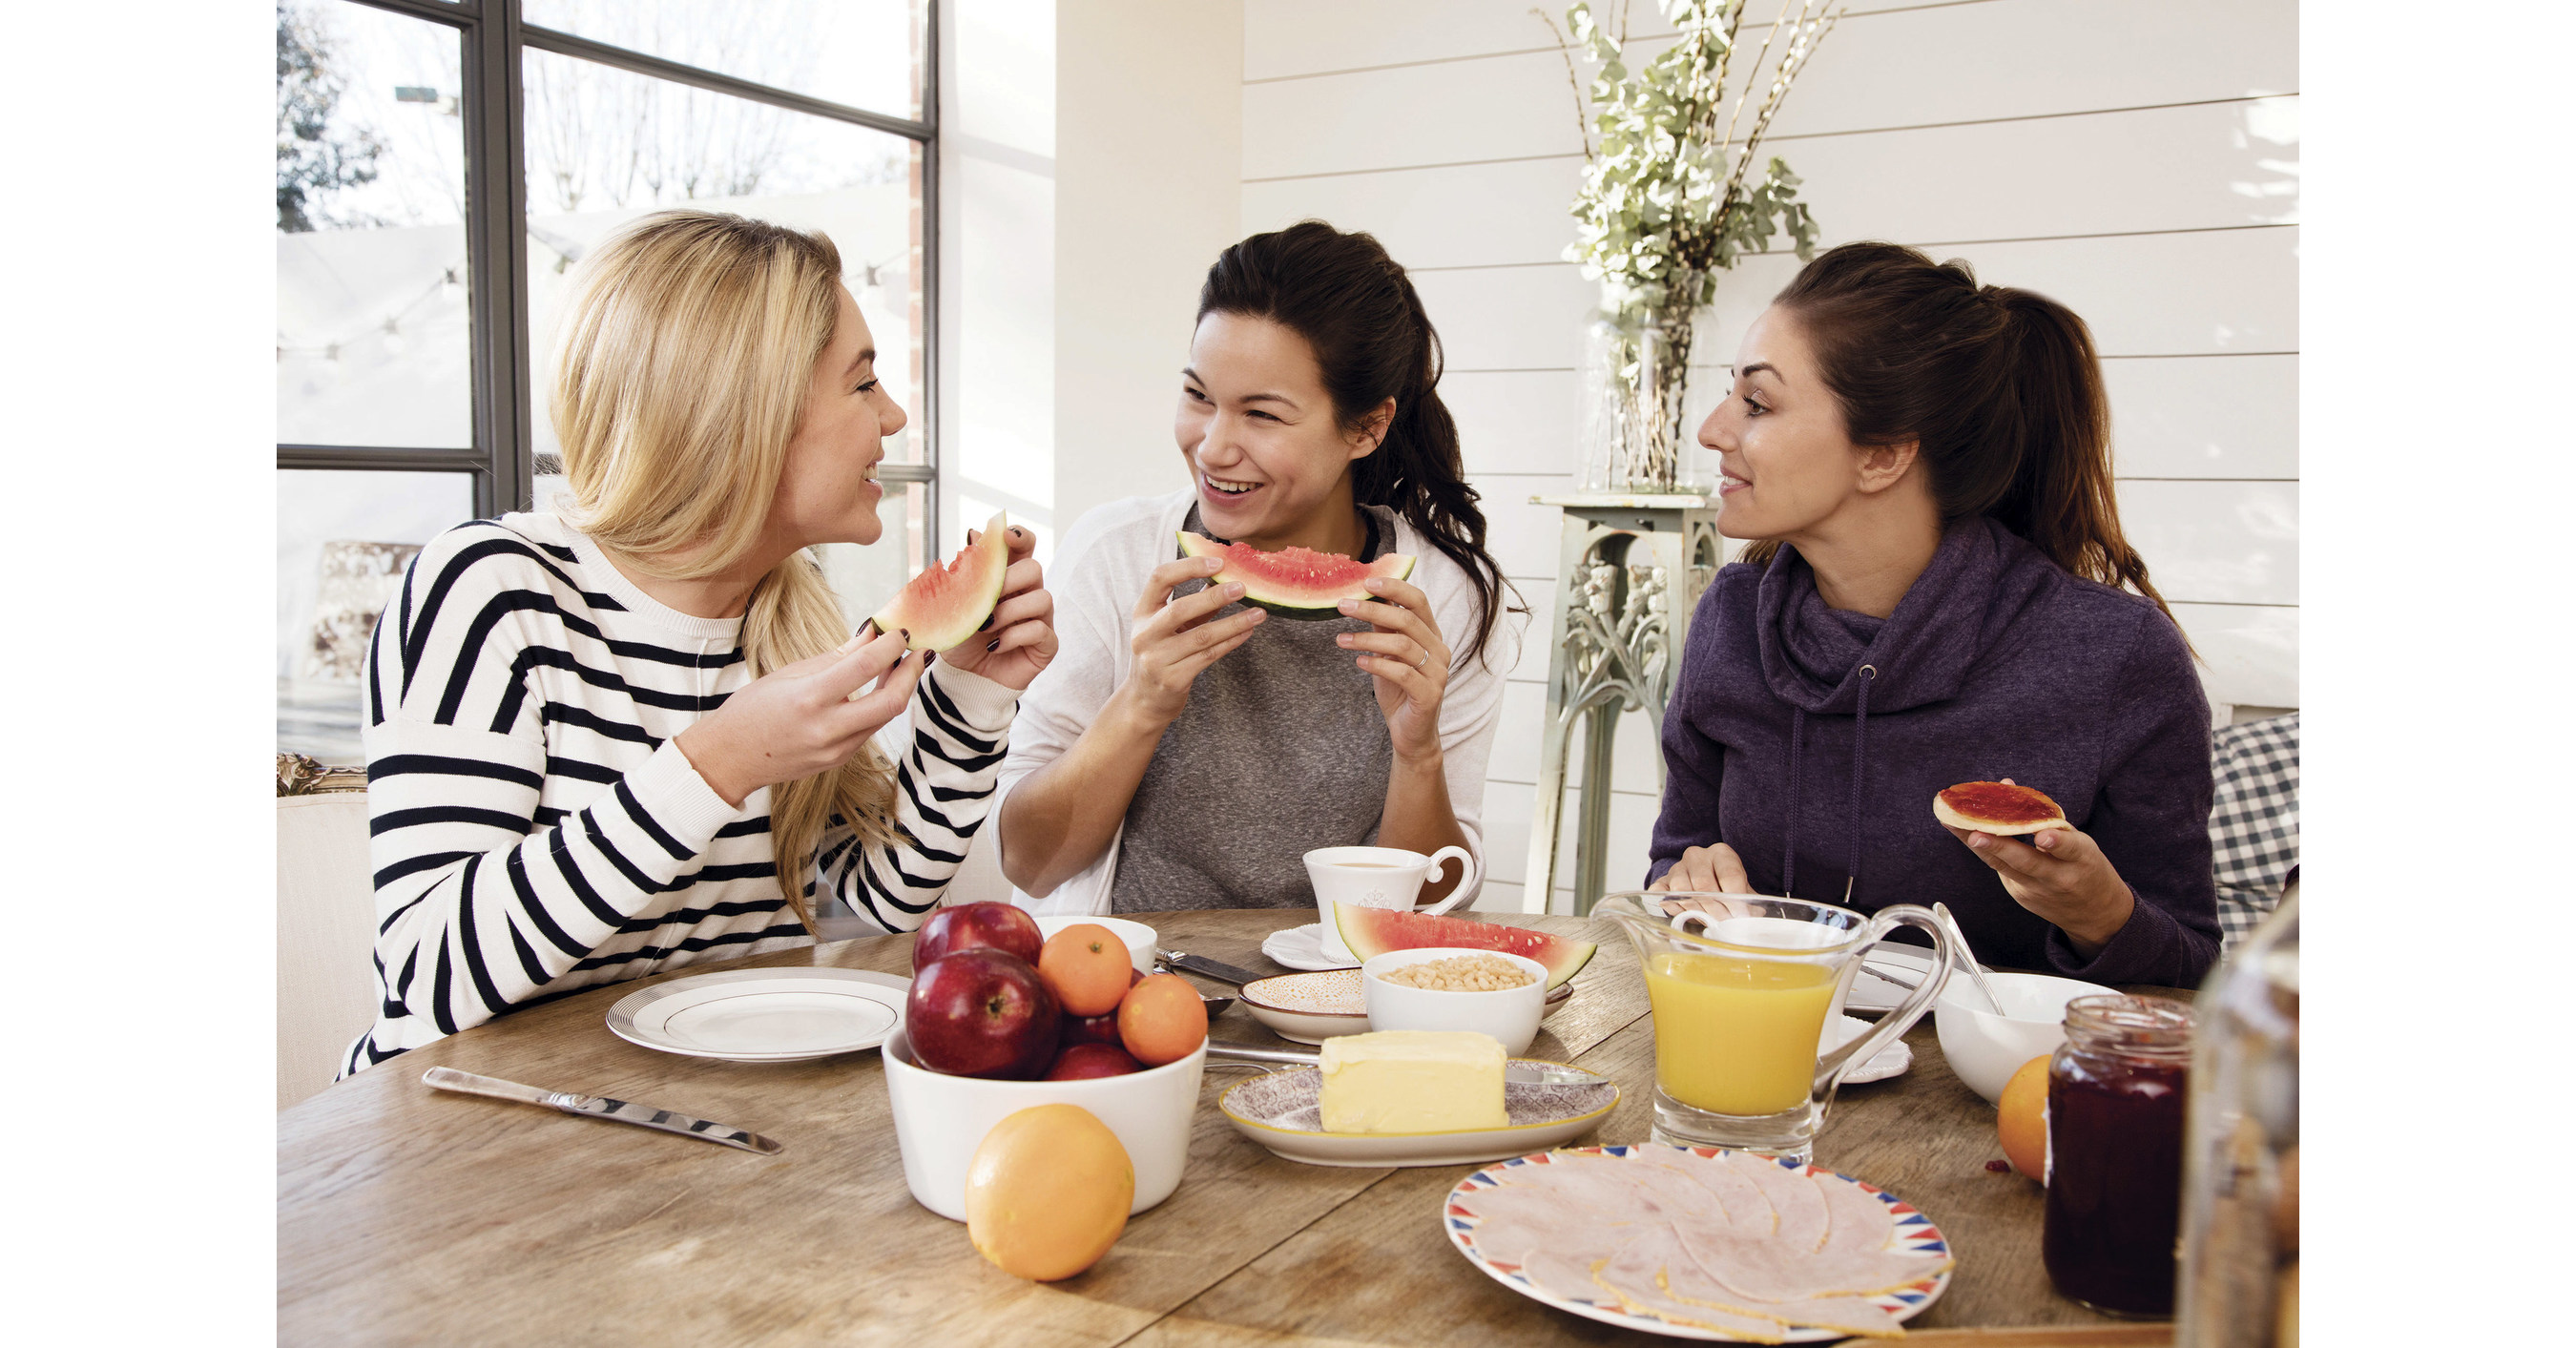 Lifestyle это. Завтрак вместе. Завтракать вместе с подругой. Картинки для карты желаний совместный завтрак. Healthy Lifestyle people.